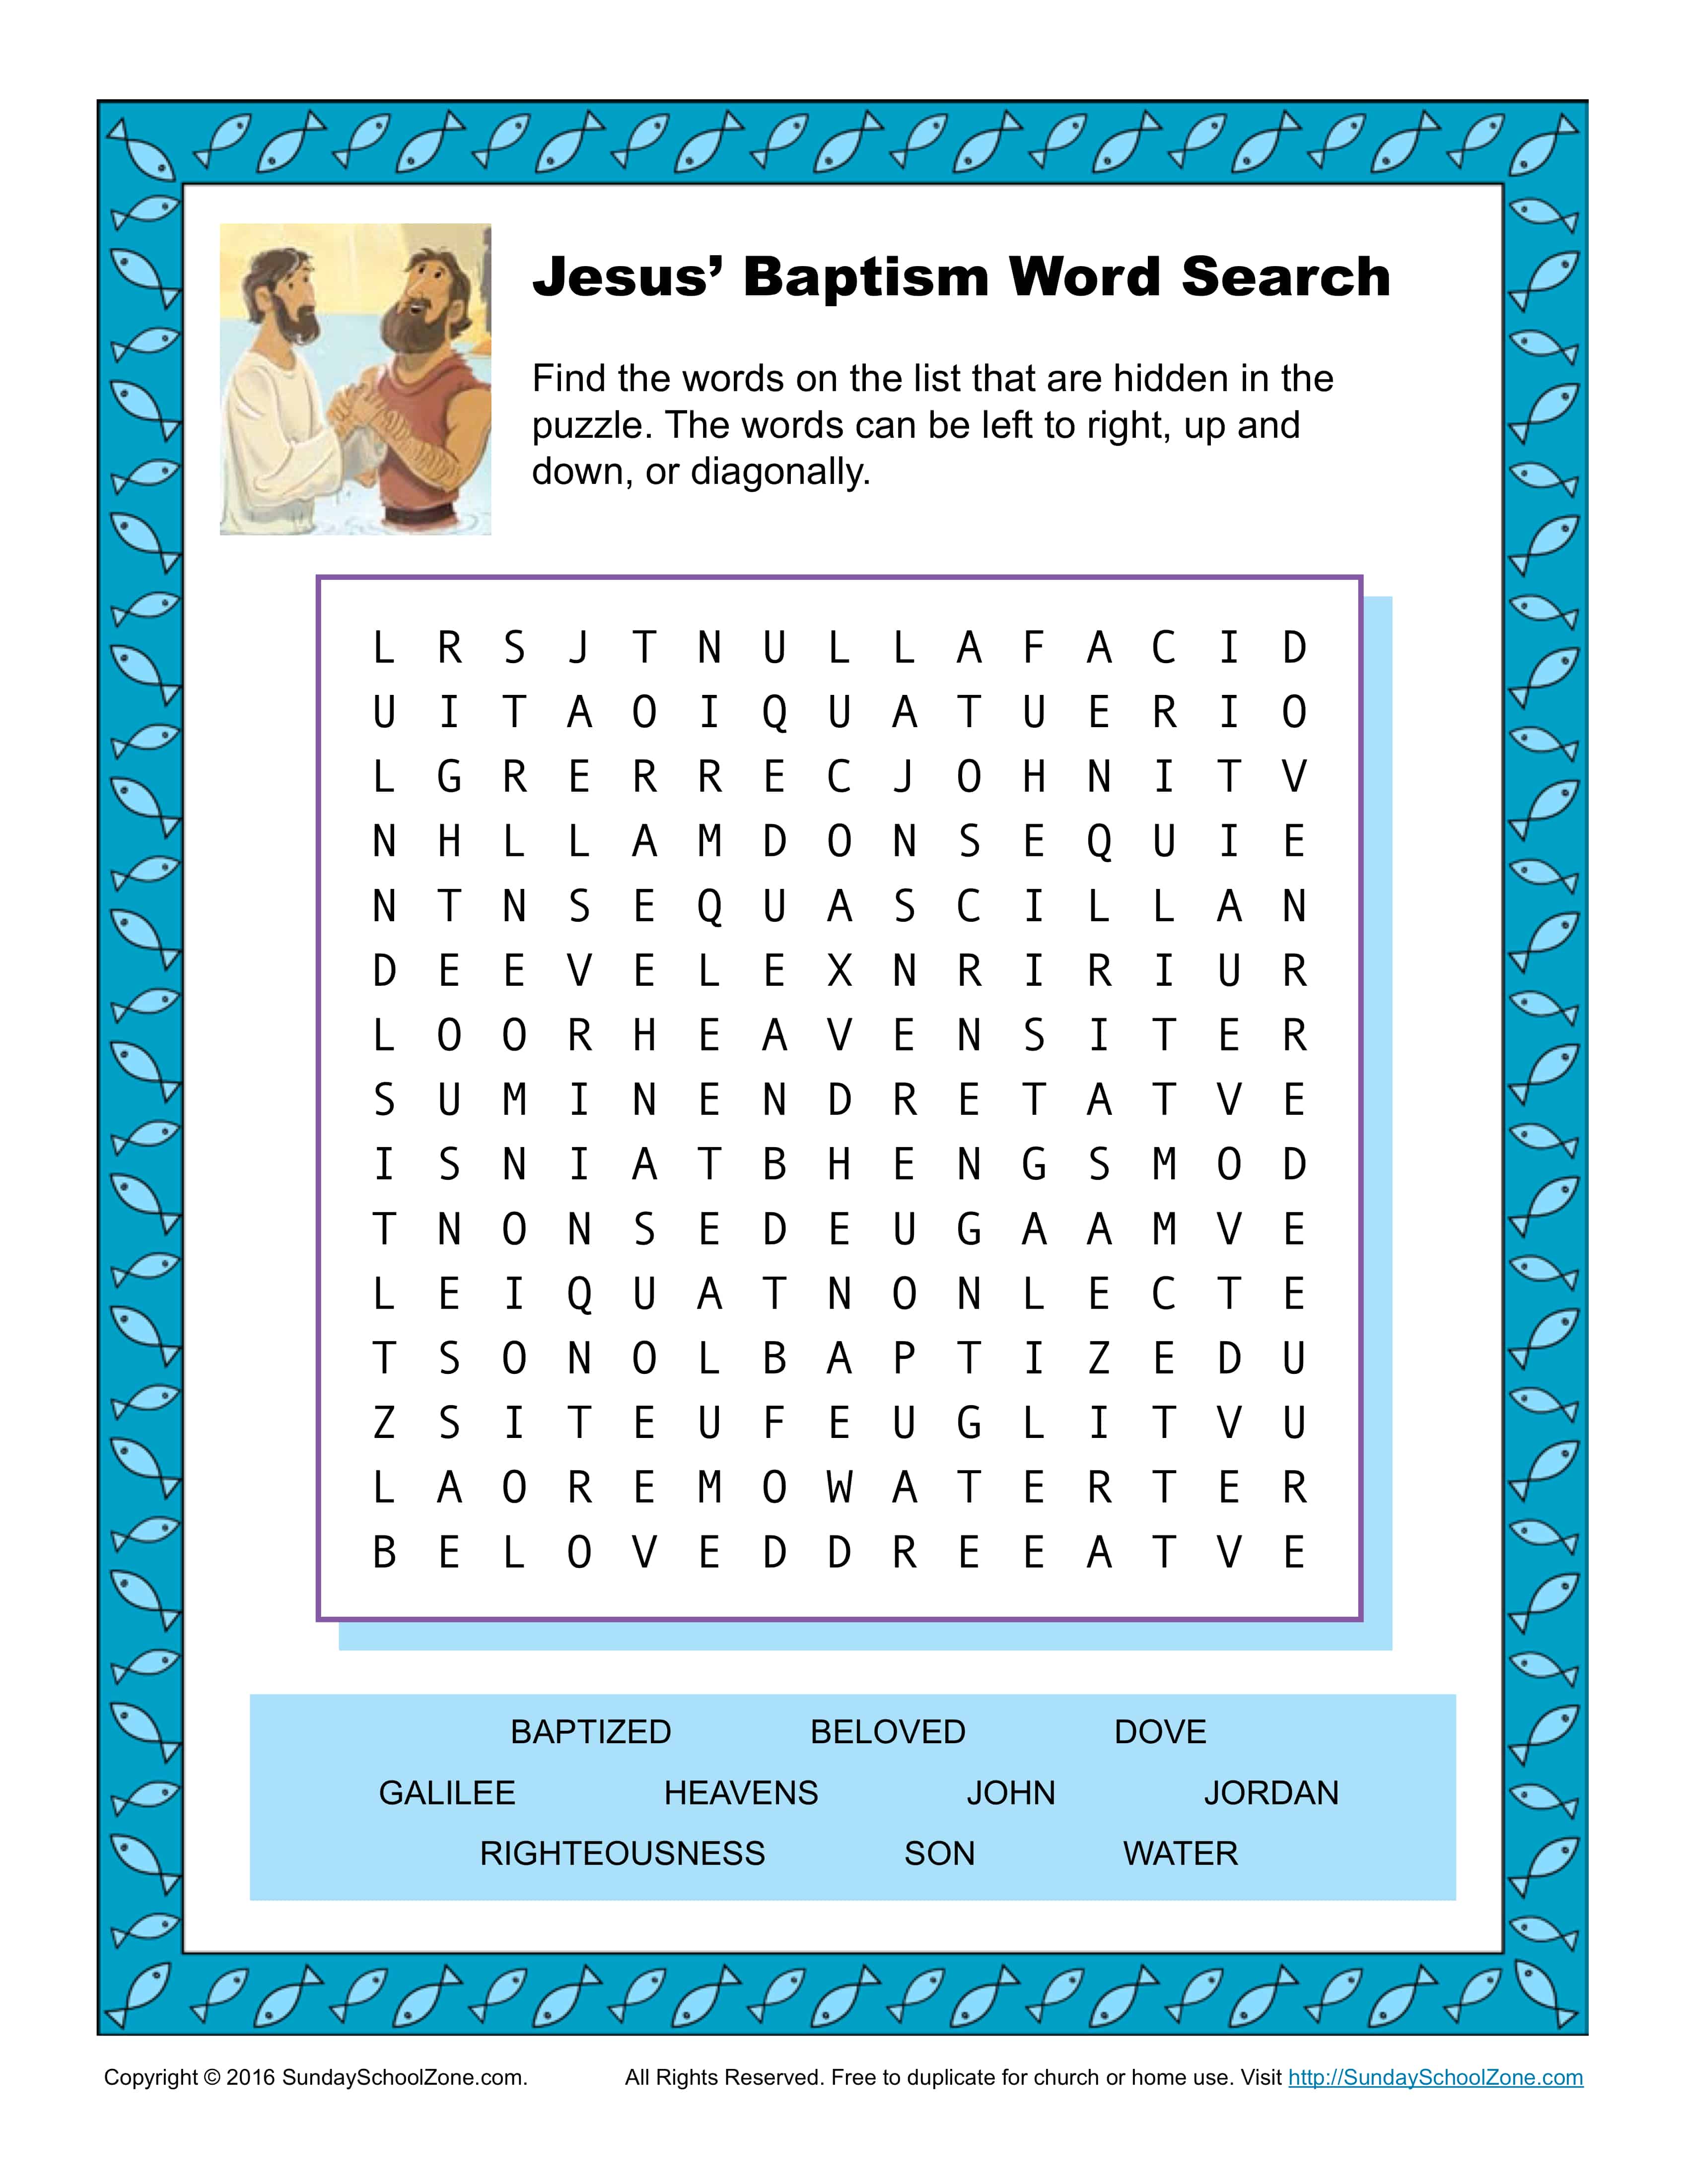 jesus-baptism-word-search-activity-children-s-bible-activities-sunday-school-activities-for